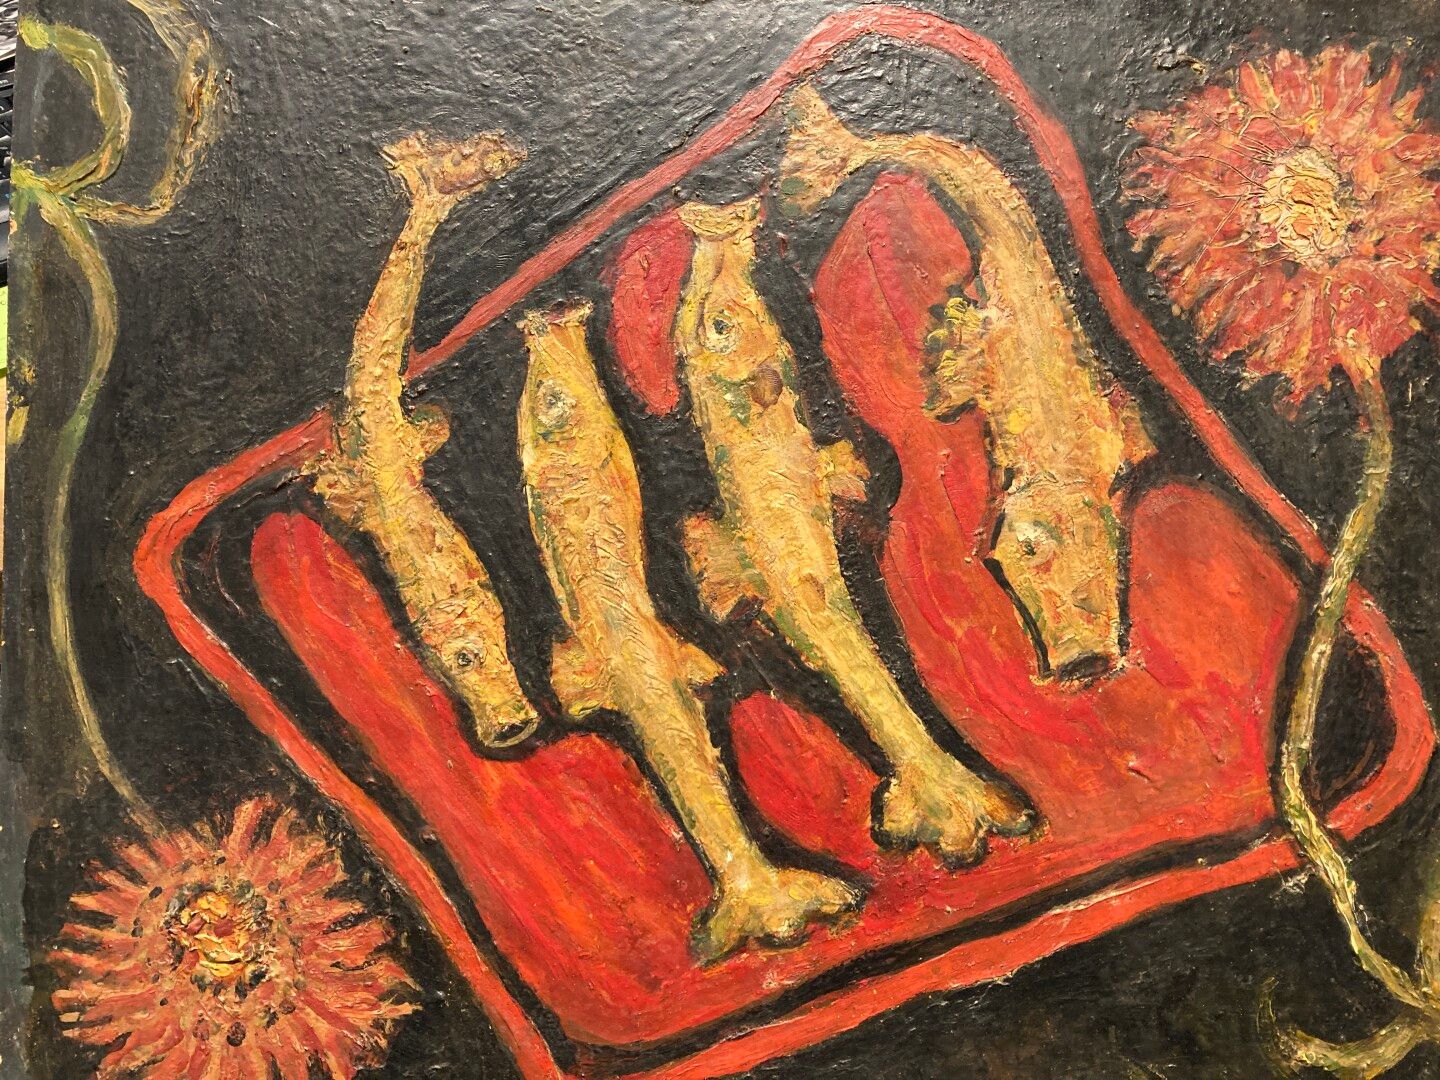 Null Scuola del XX secolo

Natura morta con pesce

Olio su cartone 

38 x 46 cm